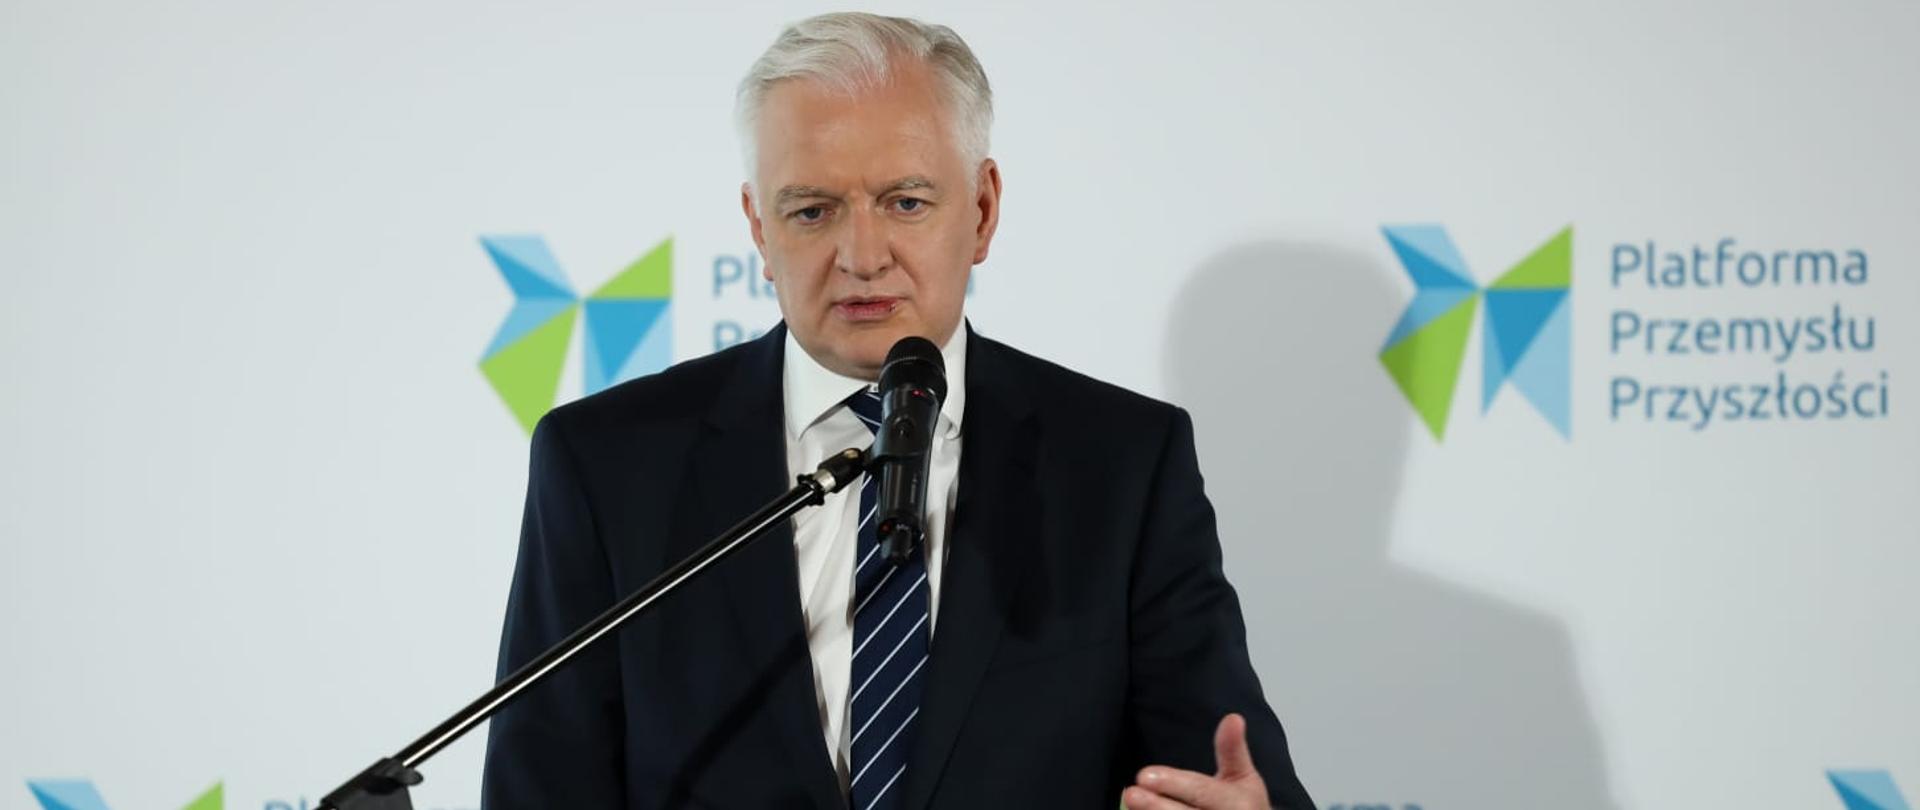 Premier Jarosław Gowin stoi za pulpitem i przemawia do ludzi na konferencji zorganizowanej przez Platformę Przemysłu Przyszłości